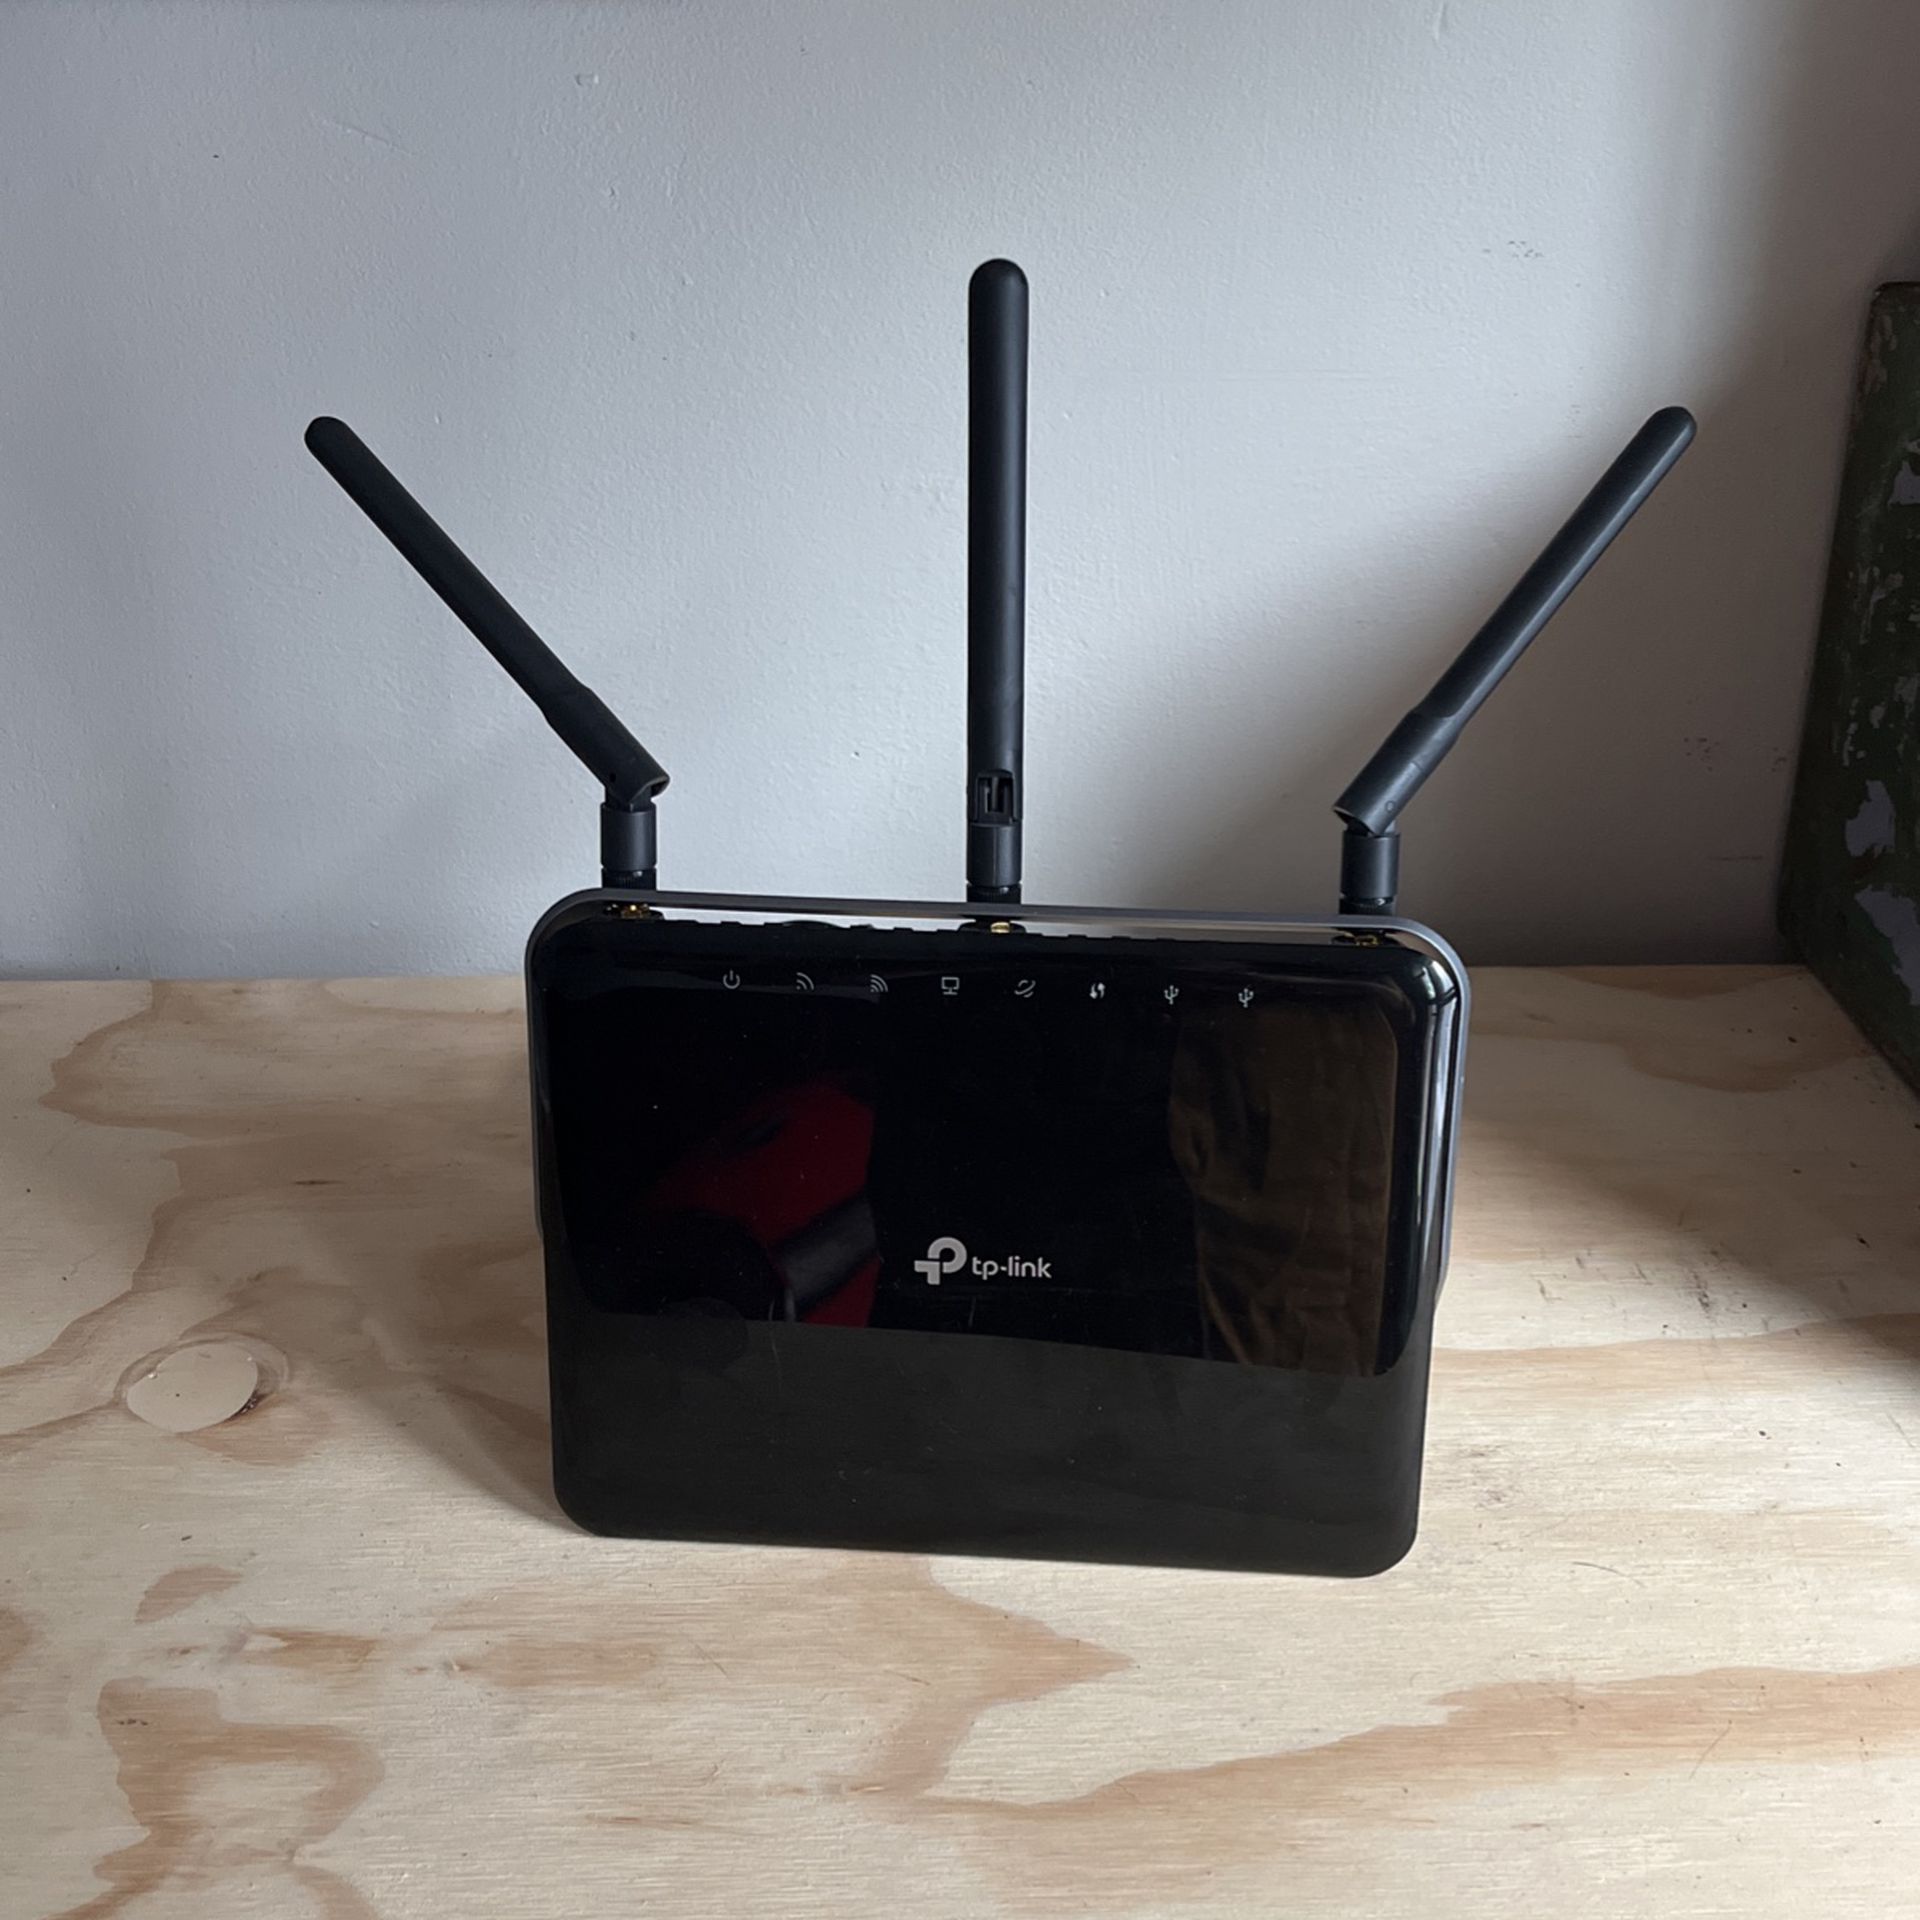 ArcherC 1900:  Wirelsss WiFi Router